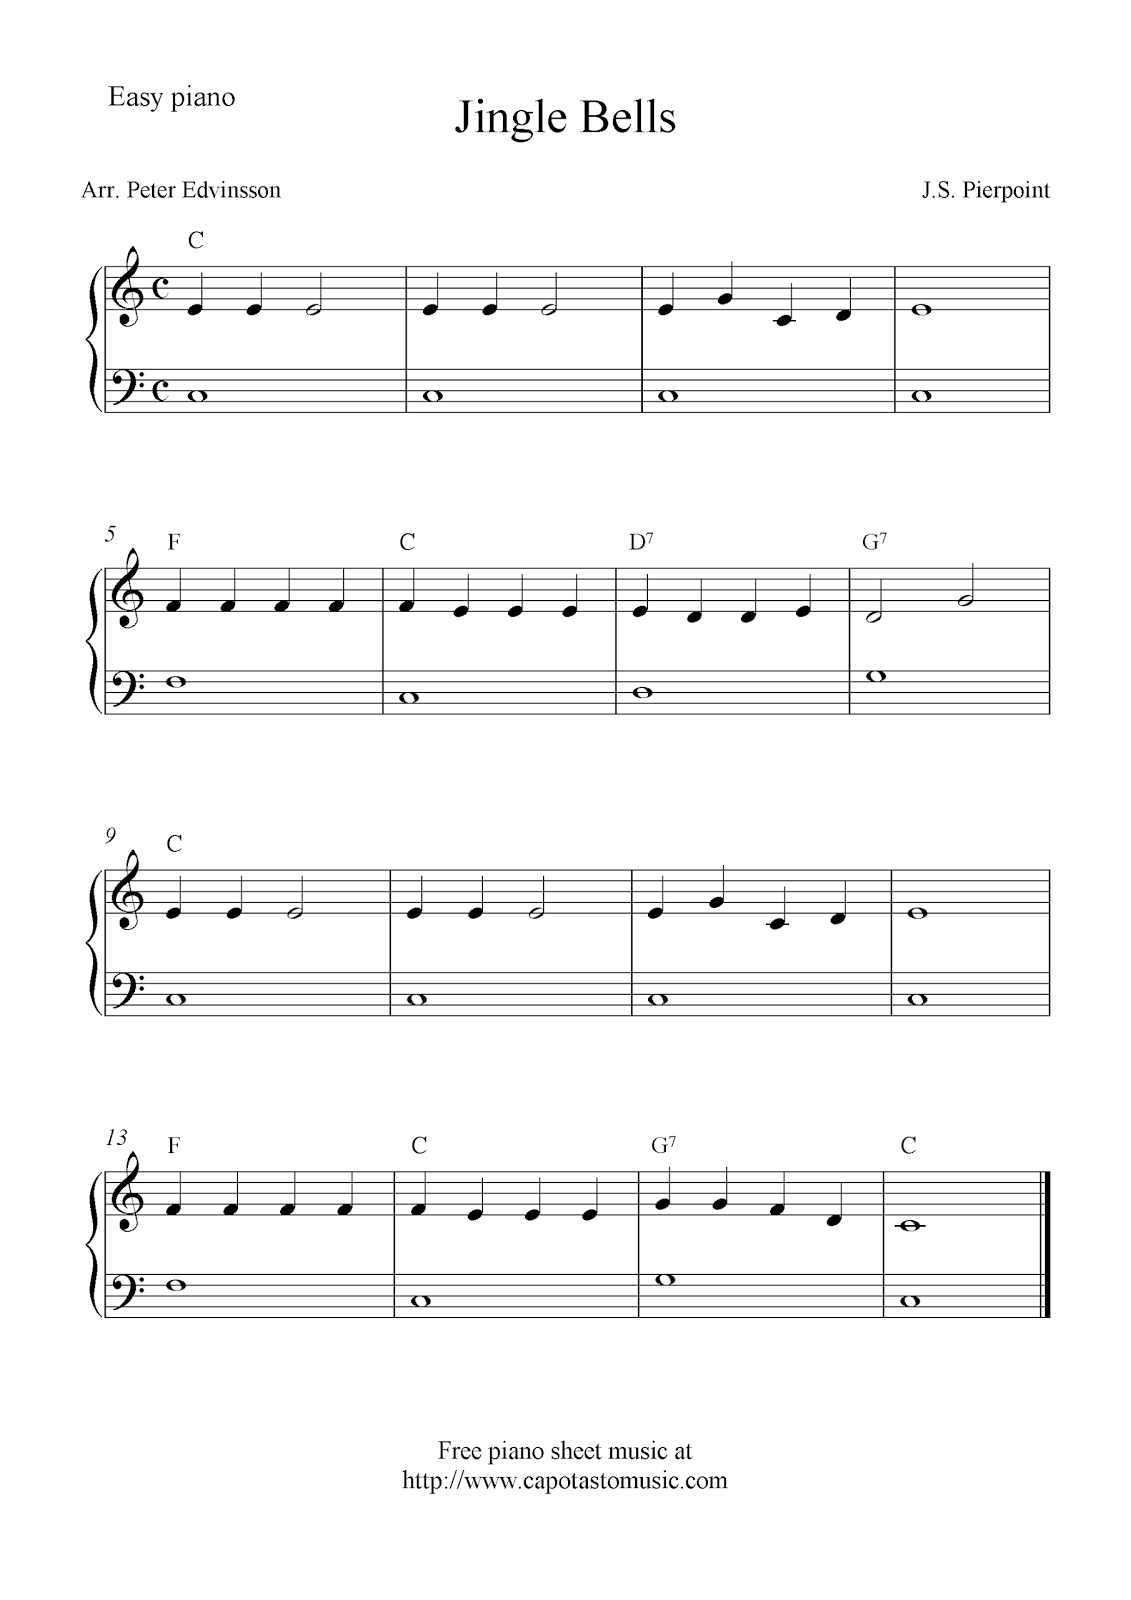 Pinmindy On Music - Christmas | Christmas Piano Sheet Music - Christmas Music For Piano Free Printable